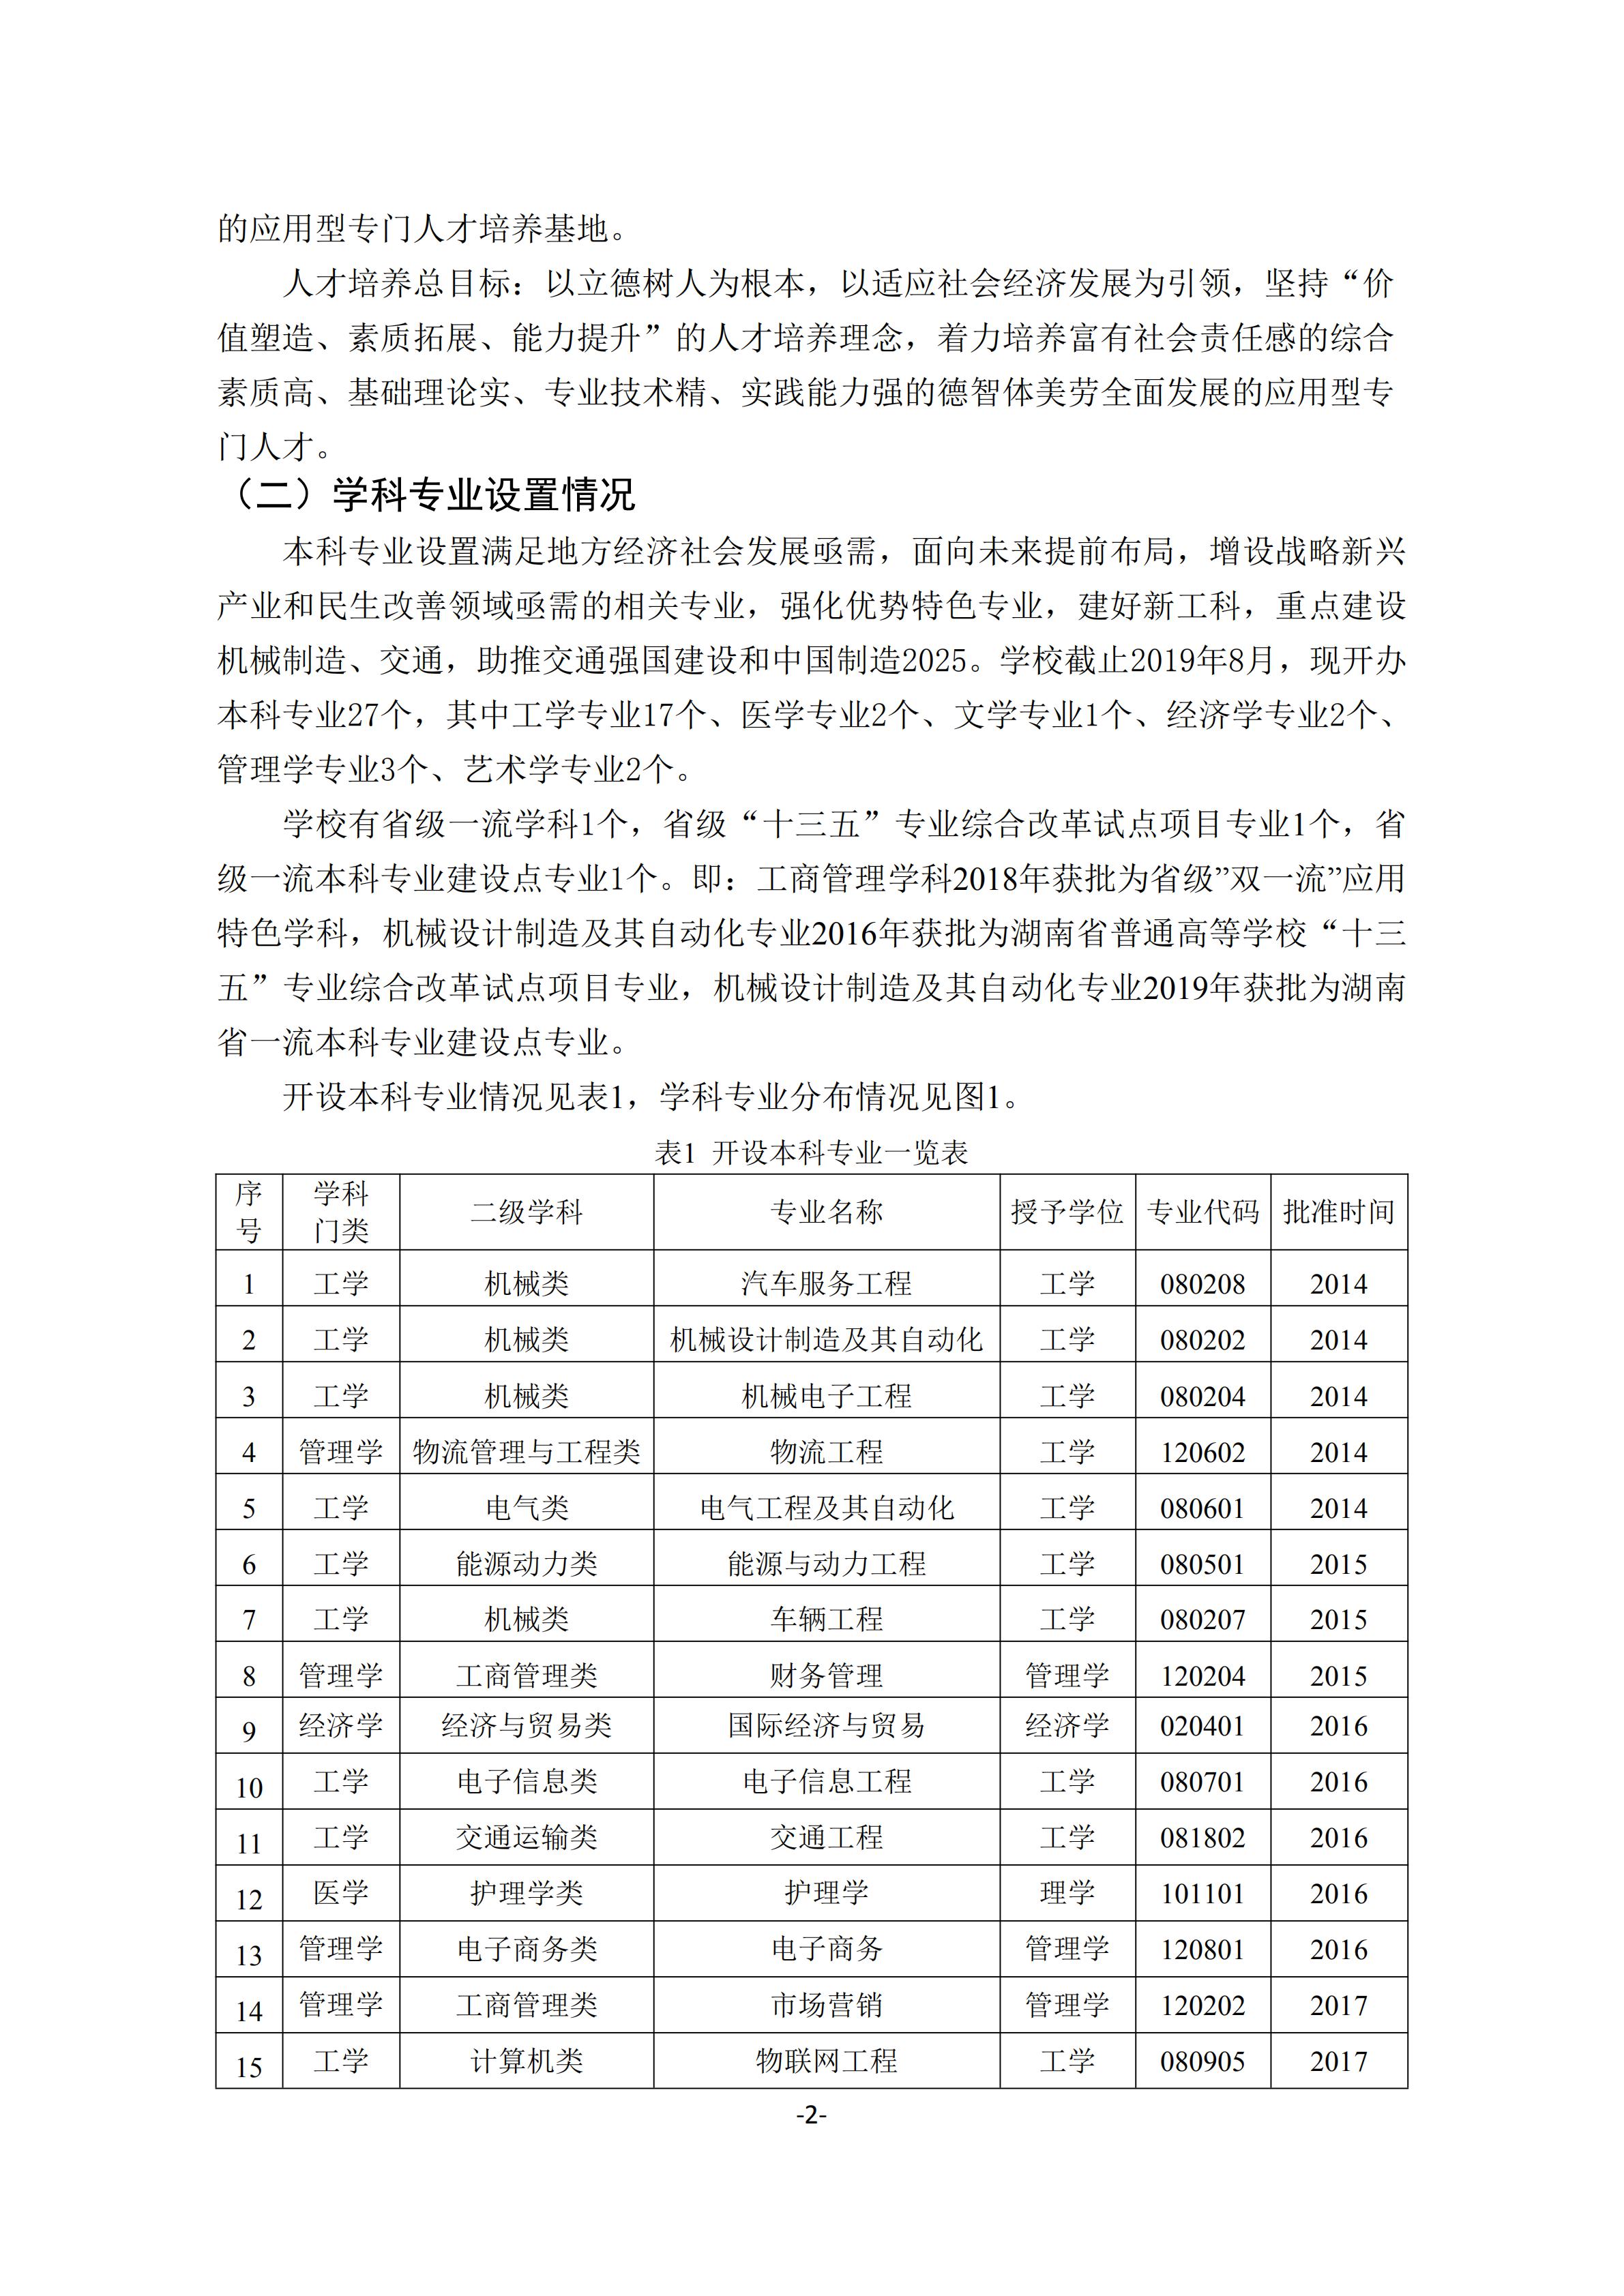 1.湖南交通工程学院2018-2019学年本科教学质量报告_01.jpg